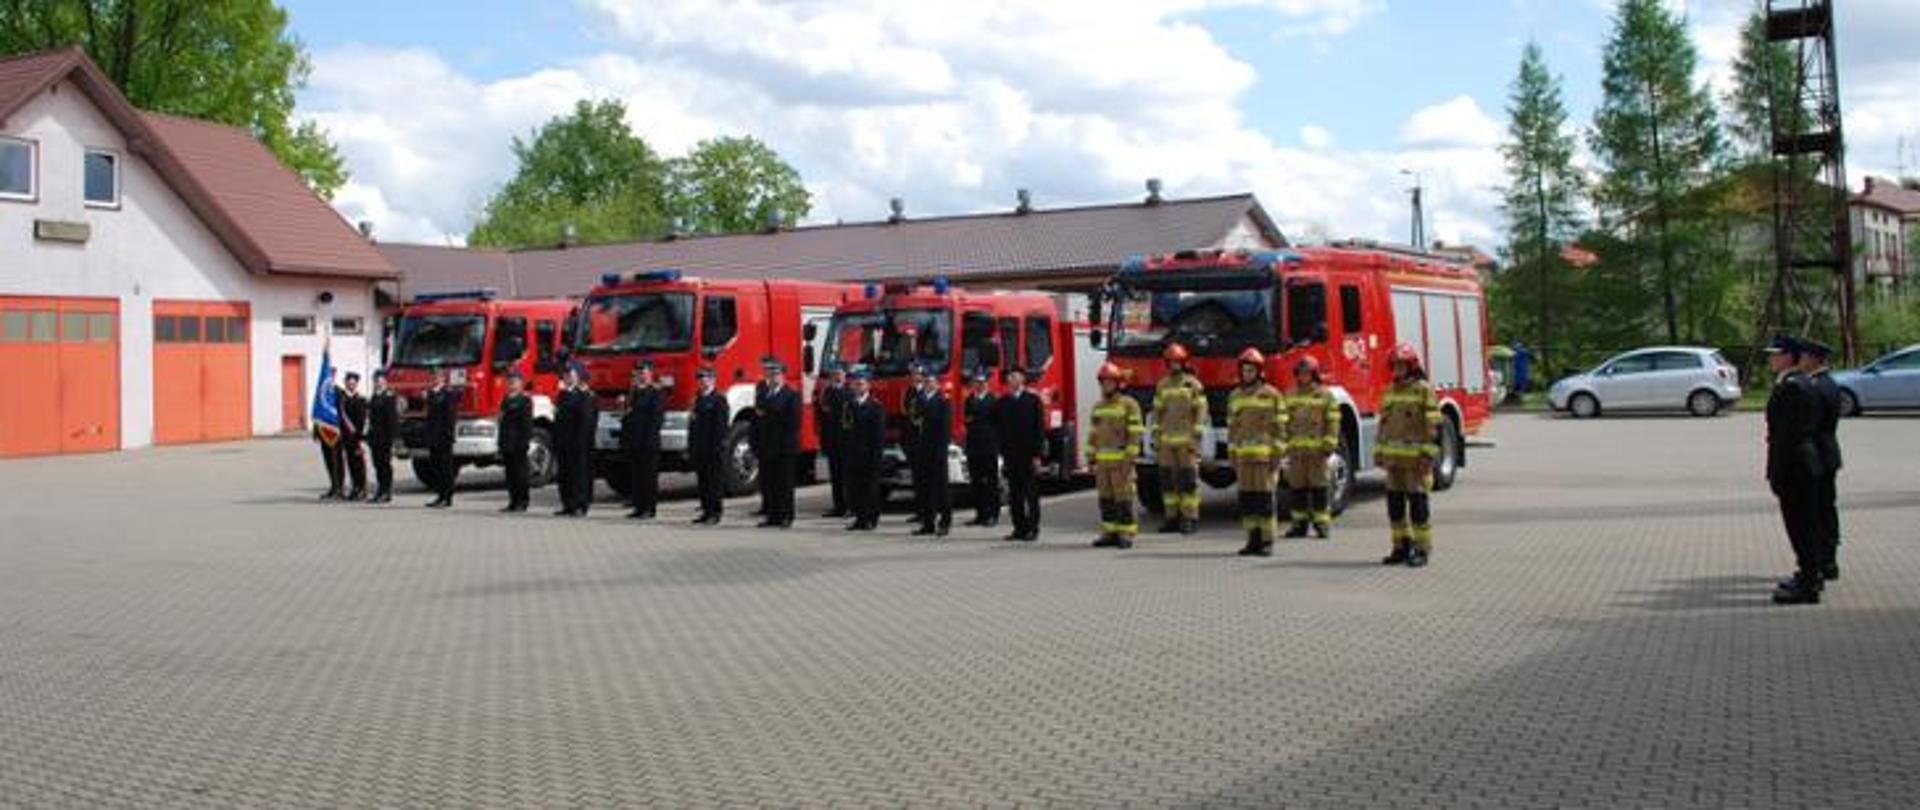 Na zdjęciu strażacy stojący w dwuszeregu na tle samochodów pożarniczych